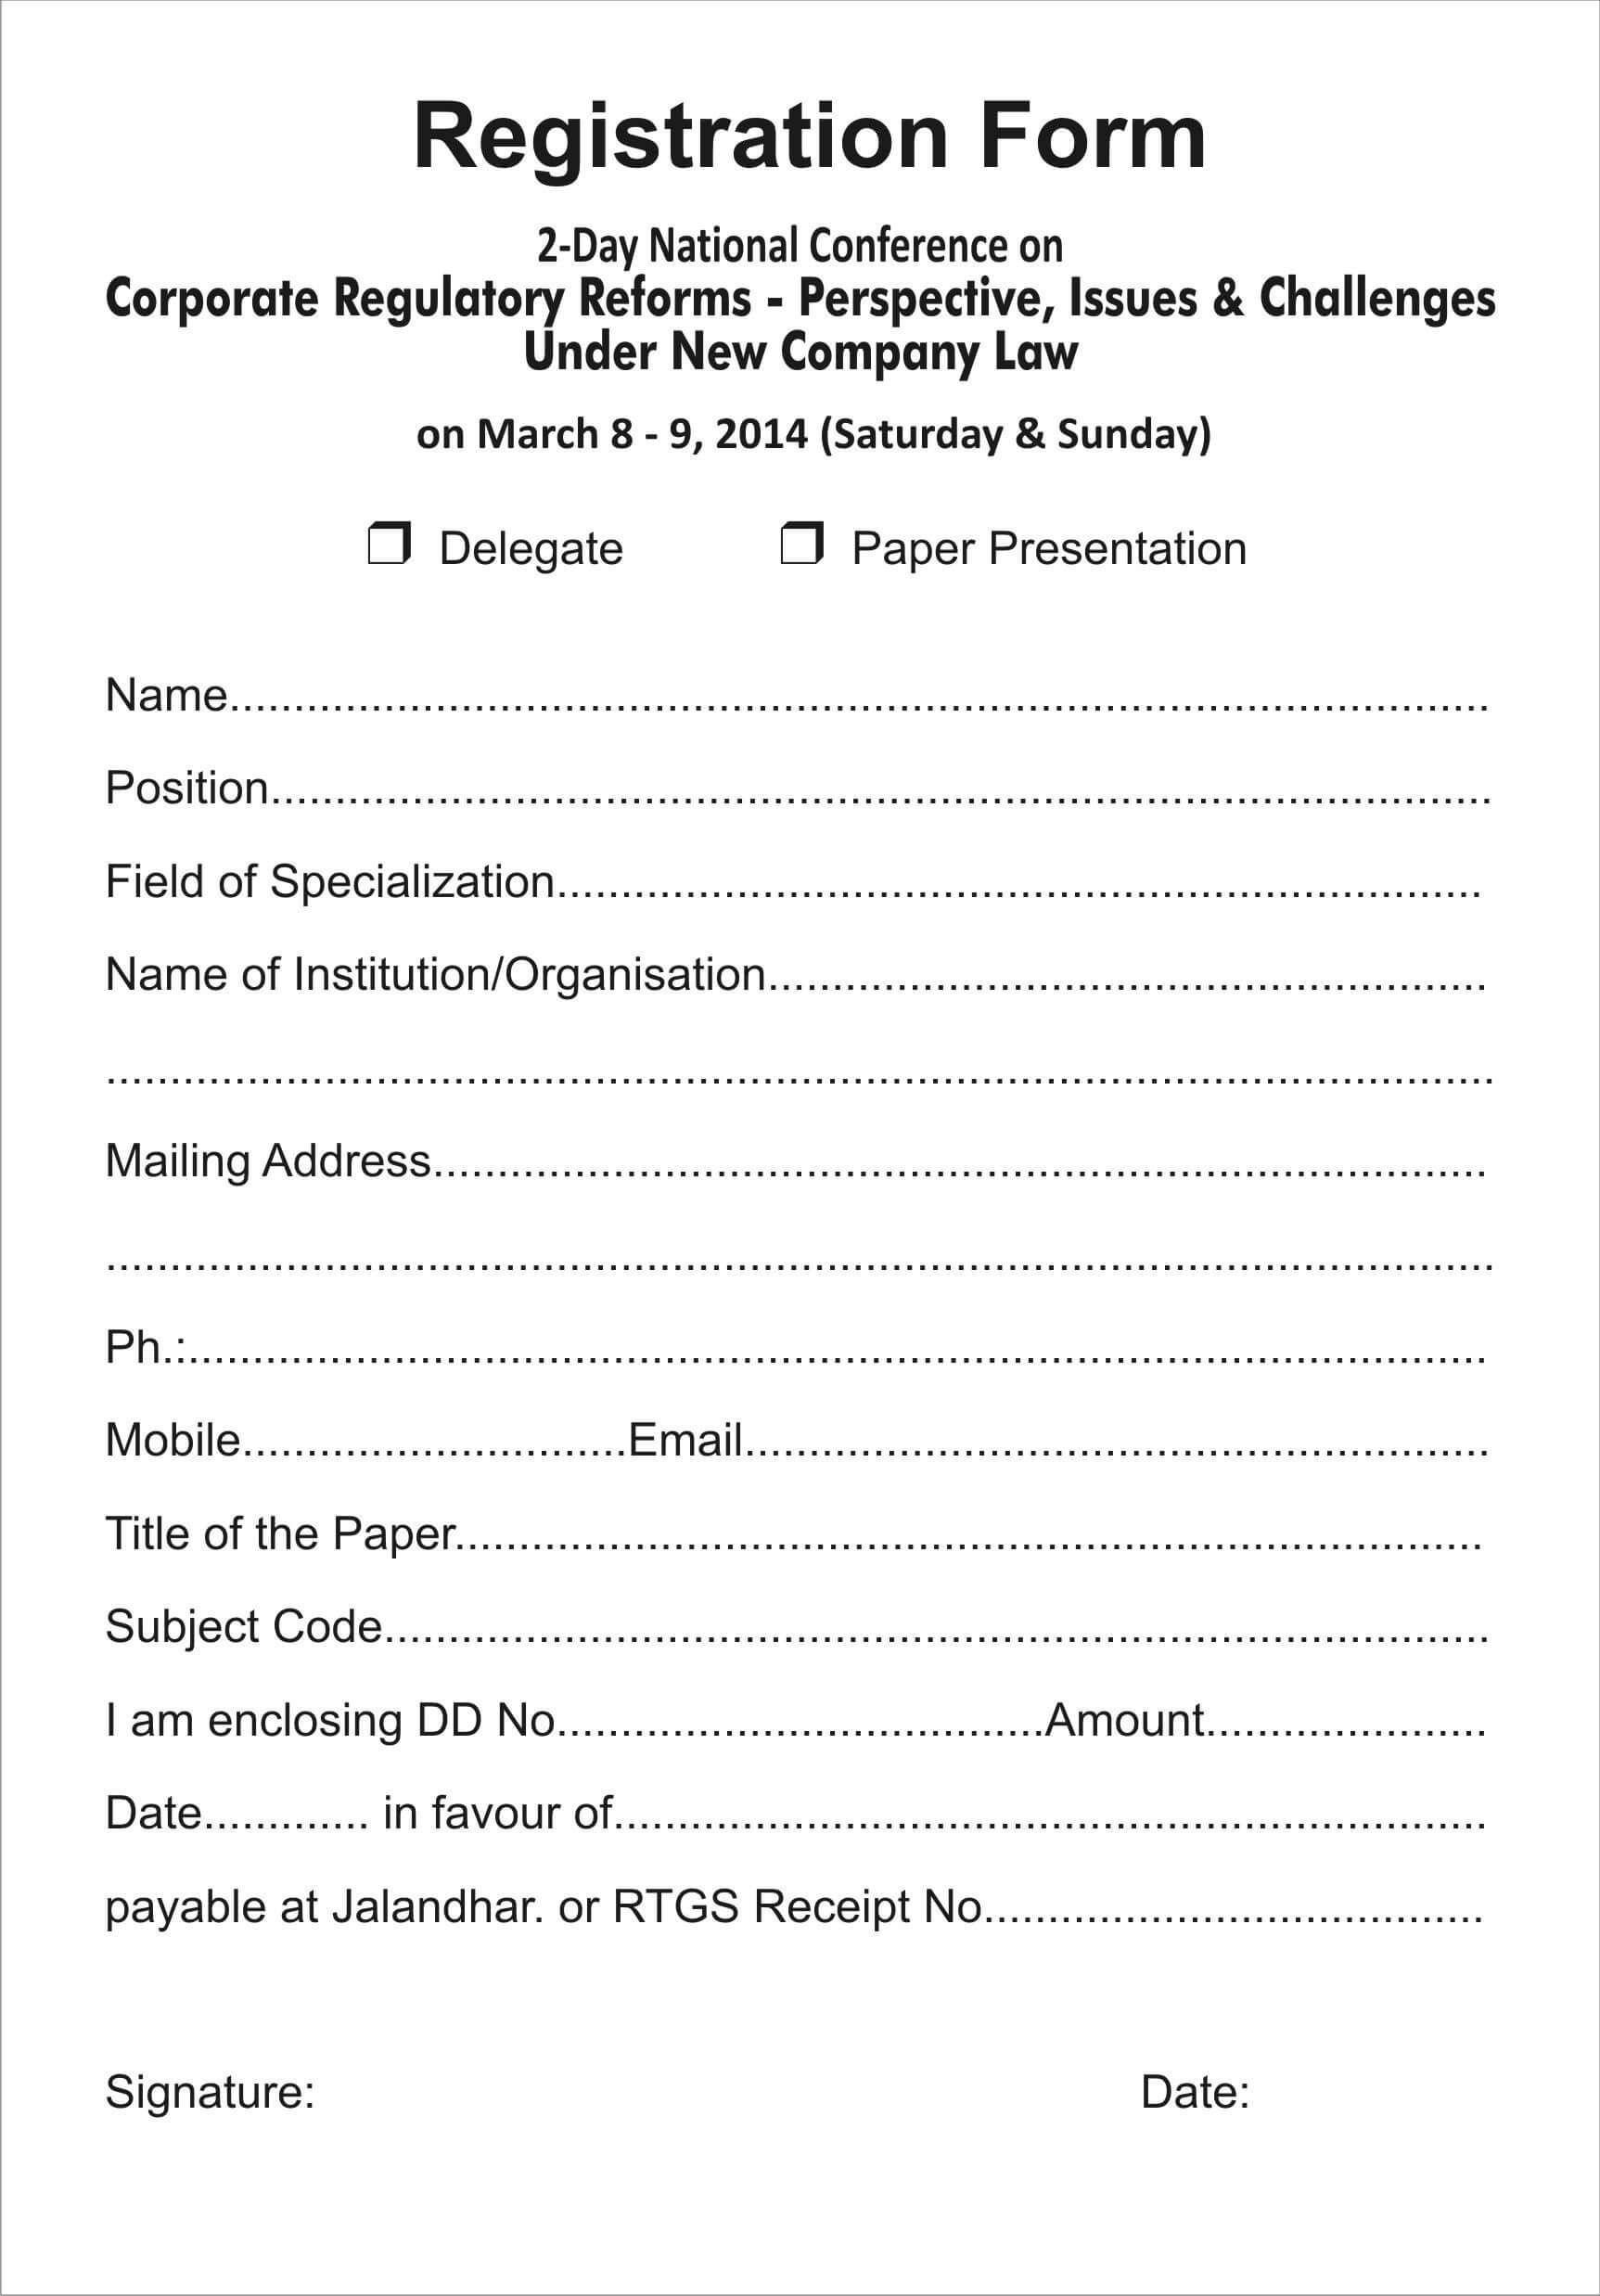 Registration Form Template Download Event Registration Form For Mobile Book Report Template